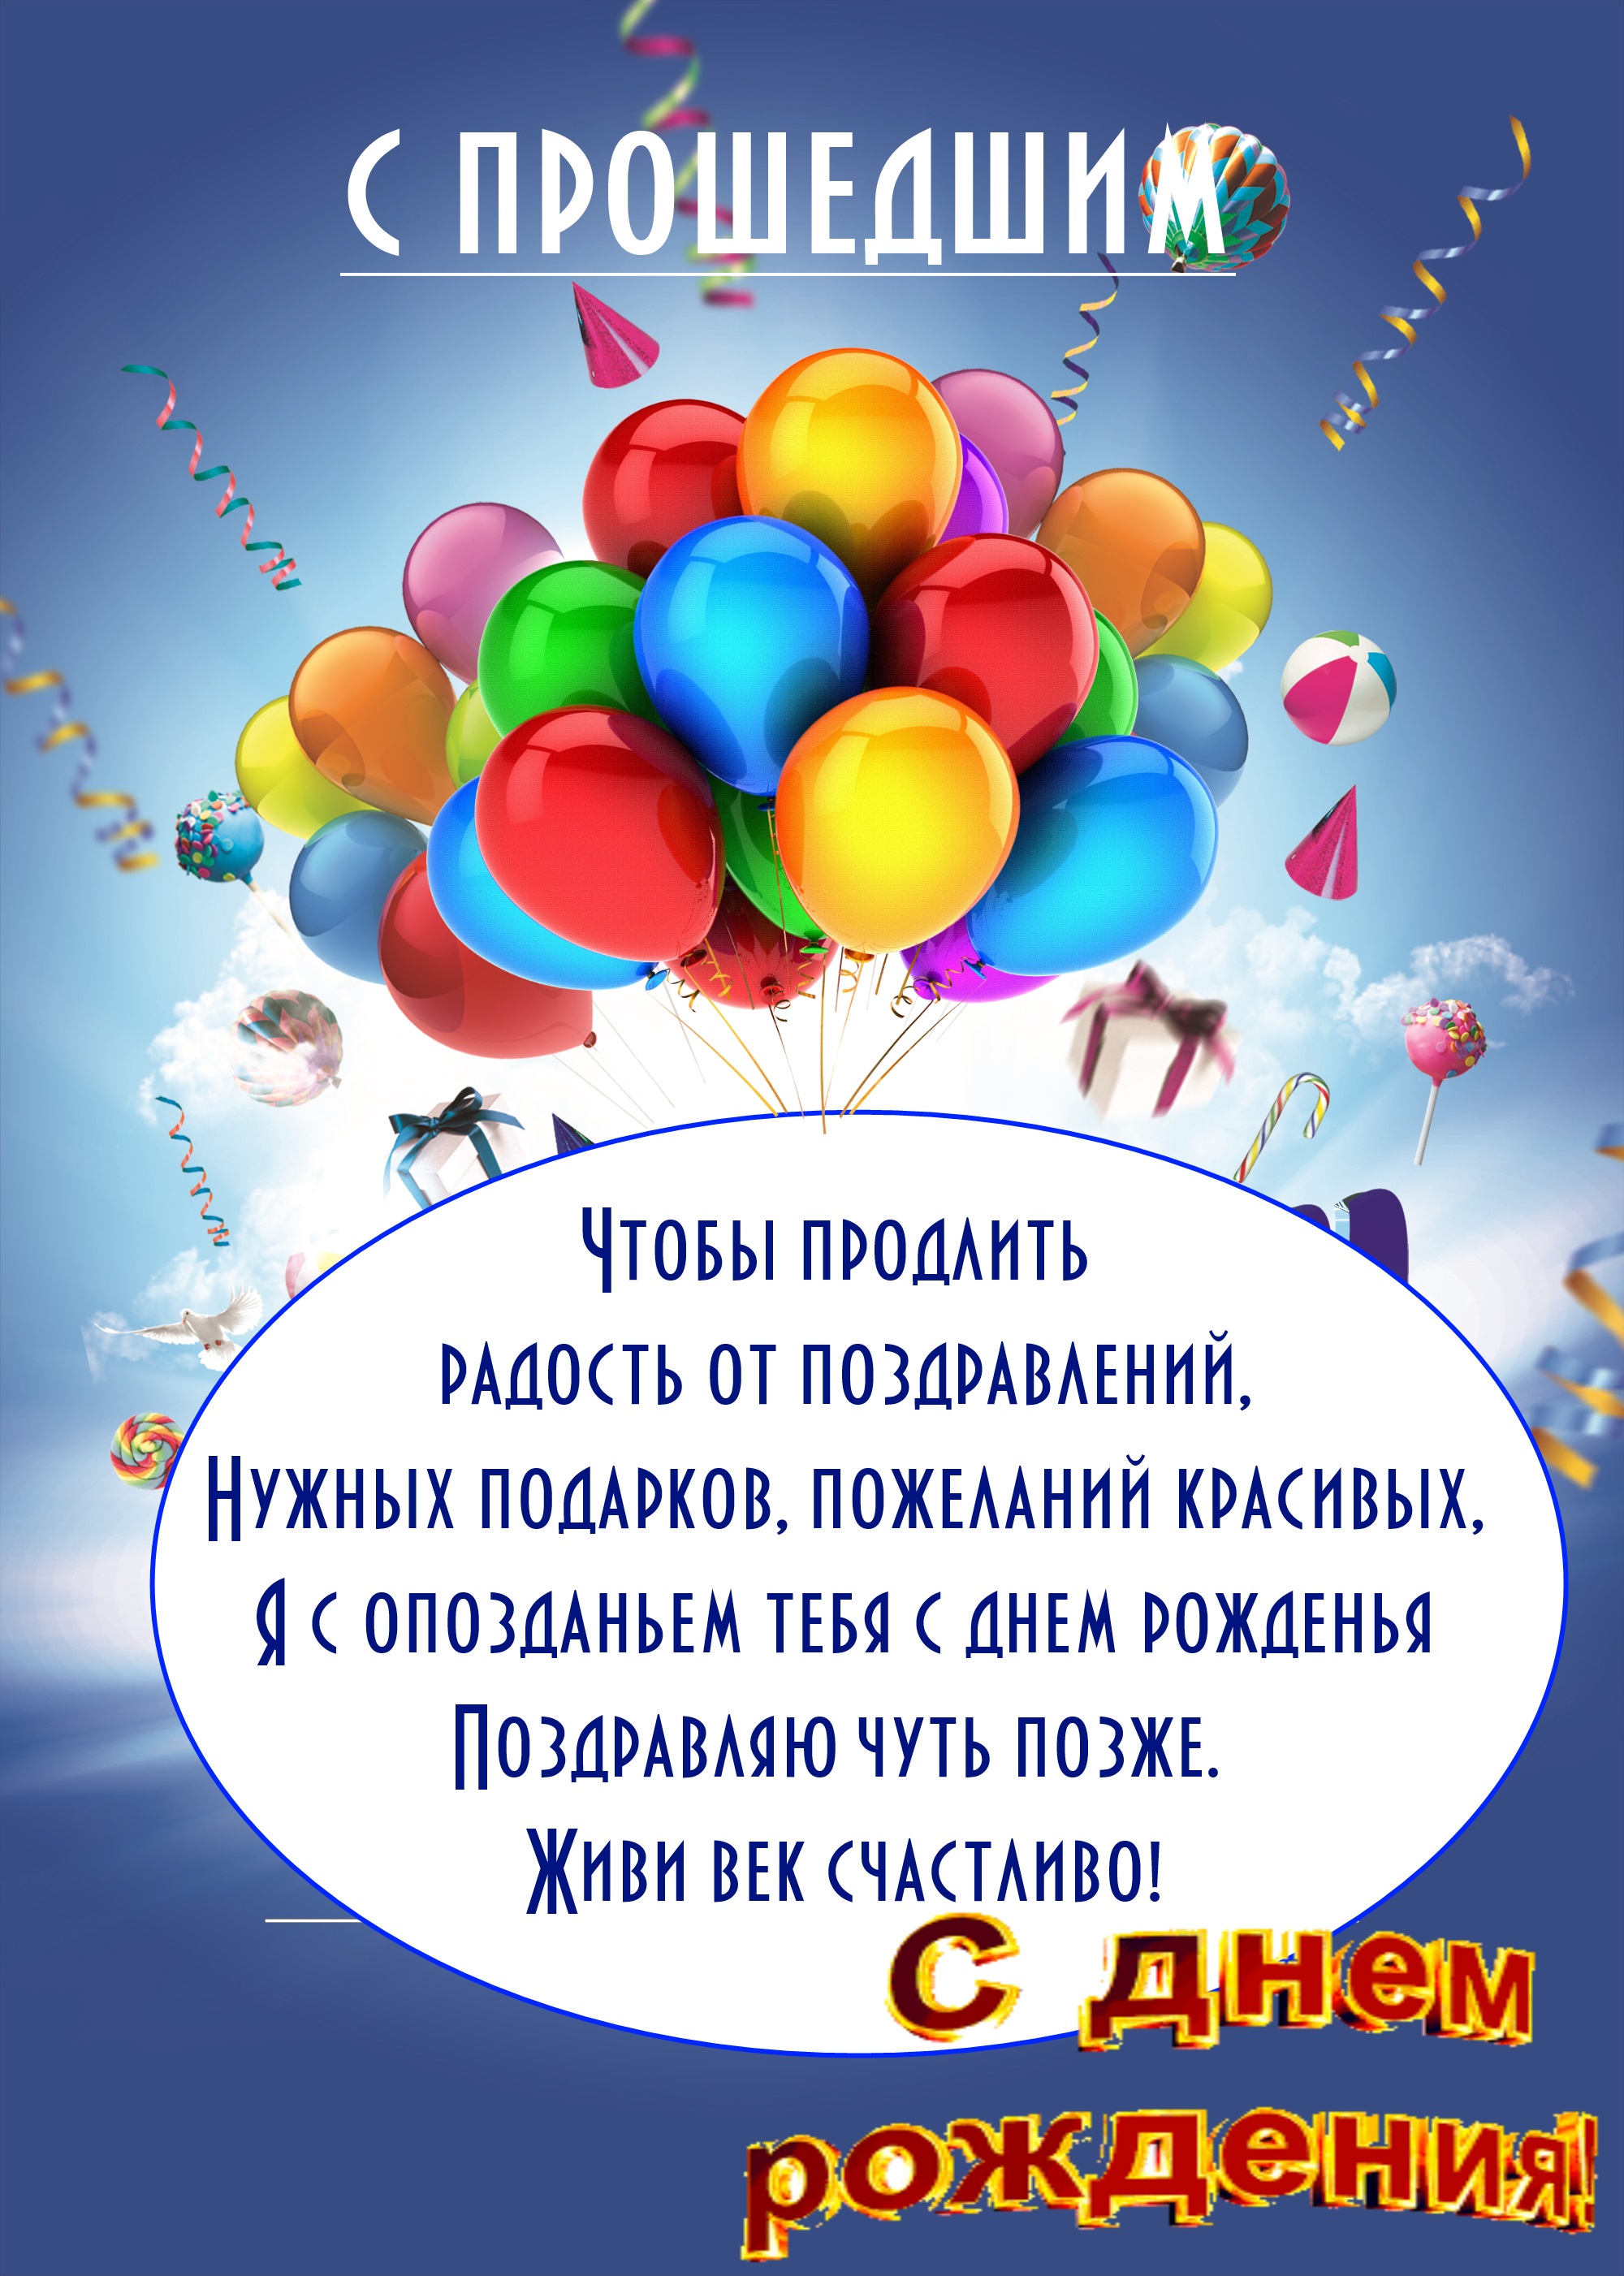 Поздравления с днем рождения с опозданием | pzdb.ru - поздравления на все случаи жизни